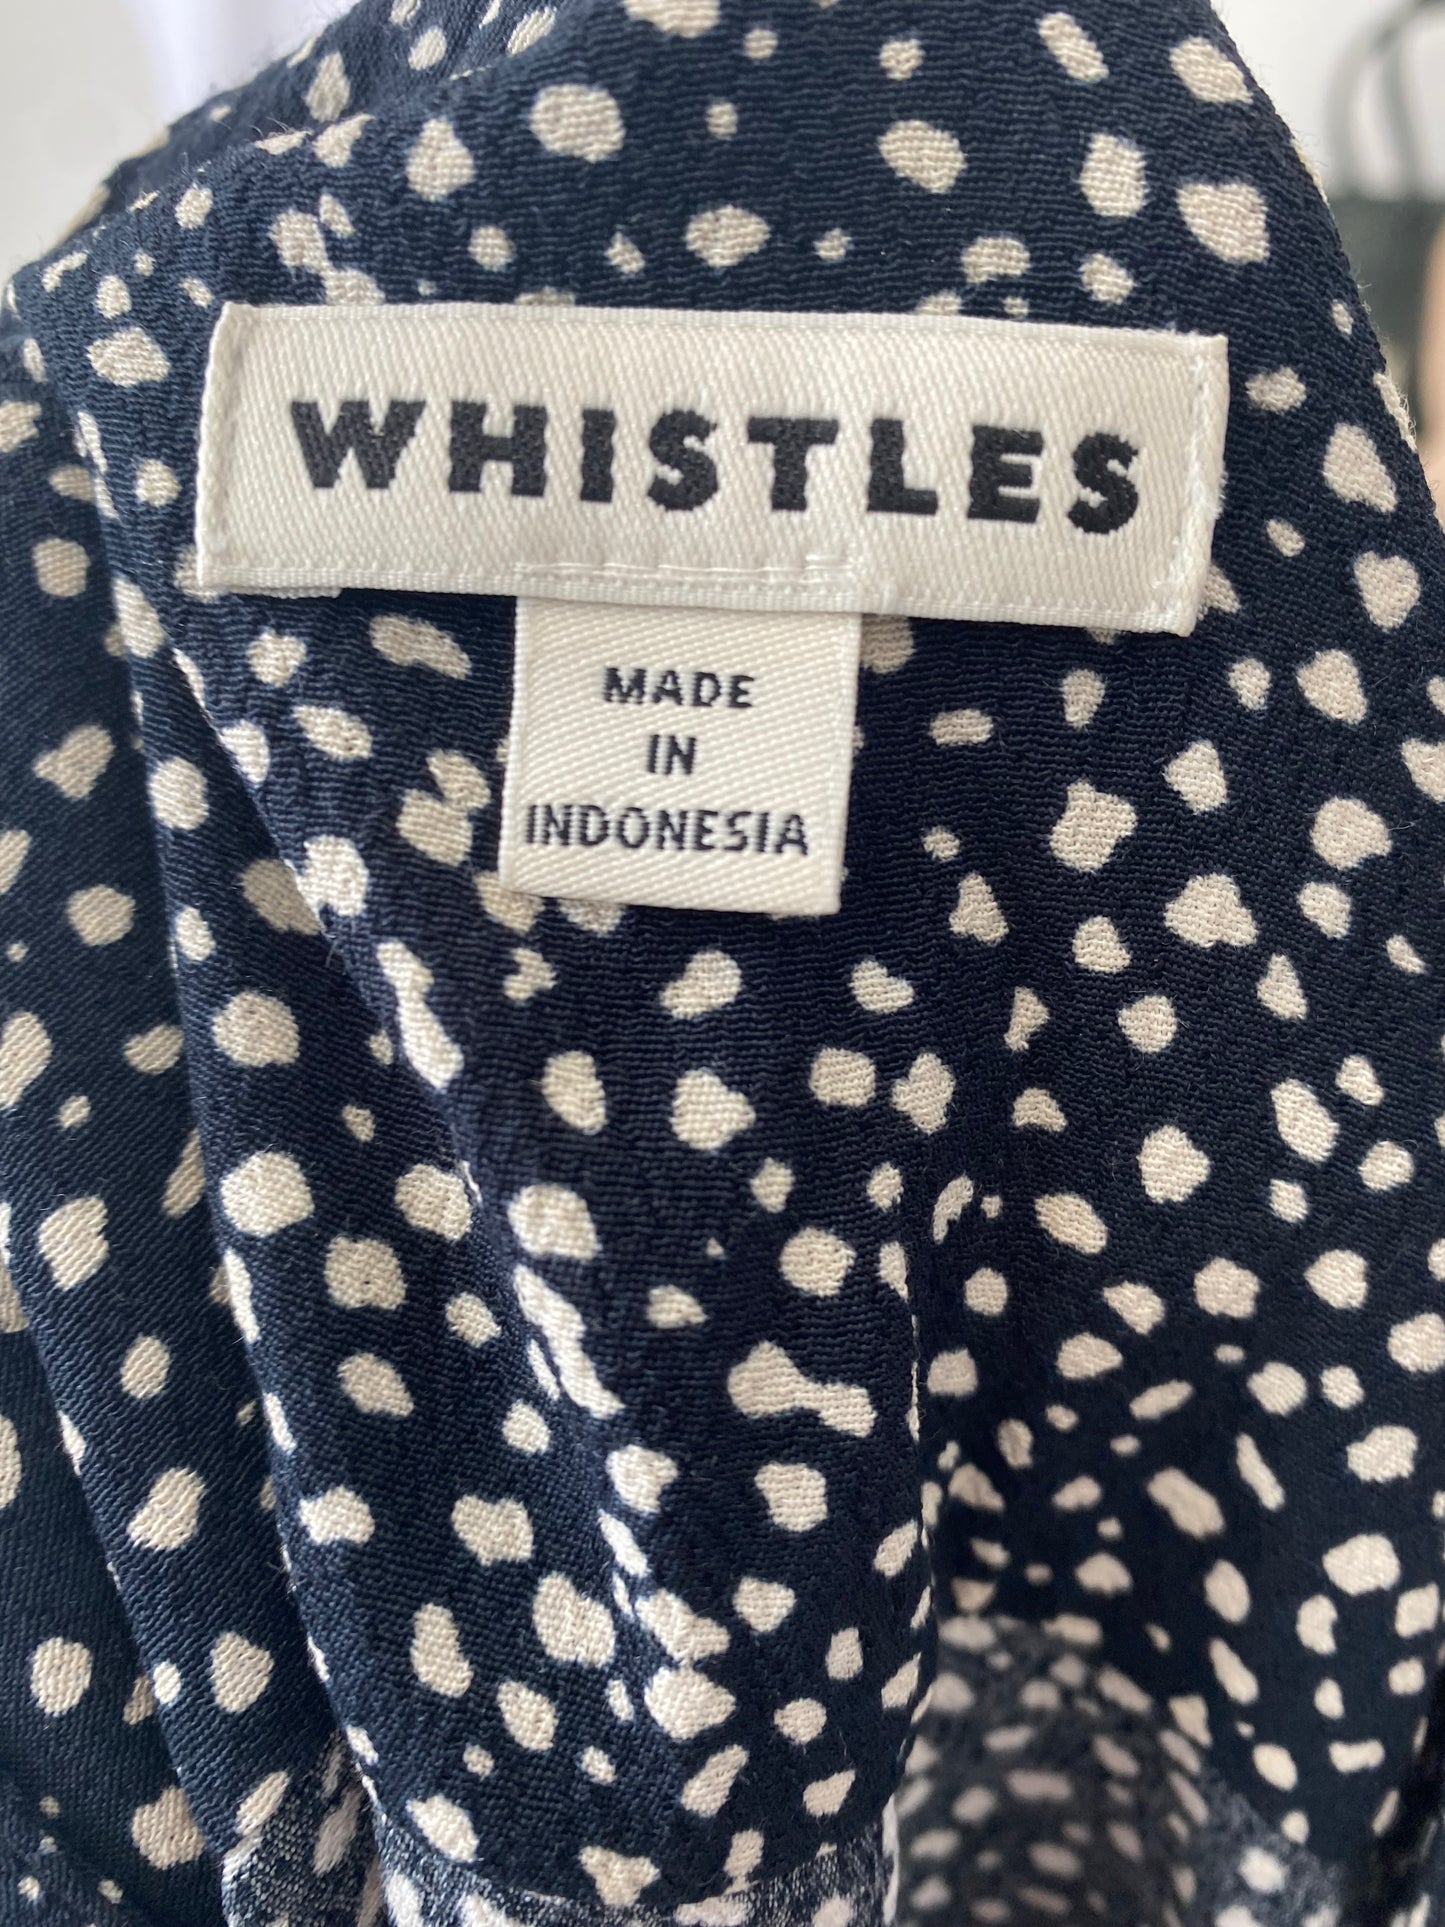 Whistles Spot Print Dress Size 12